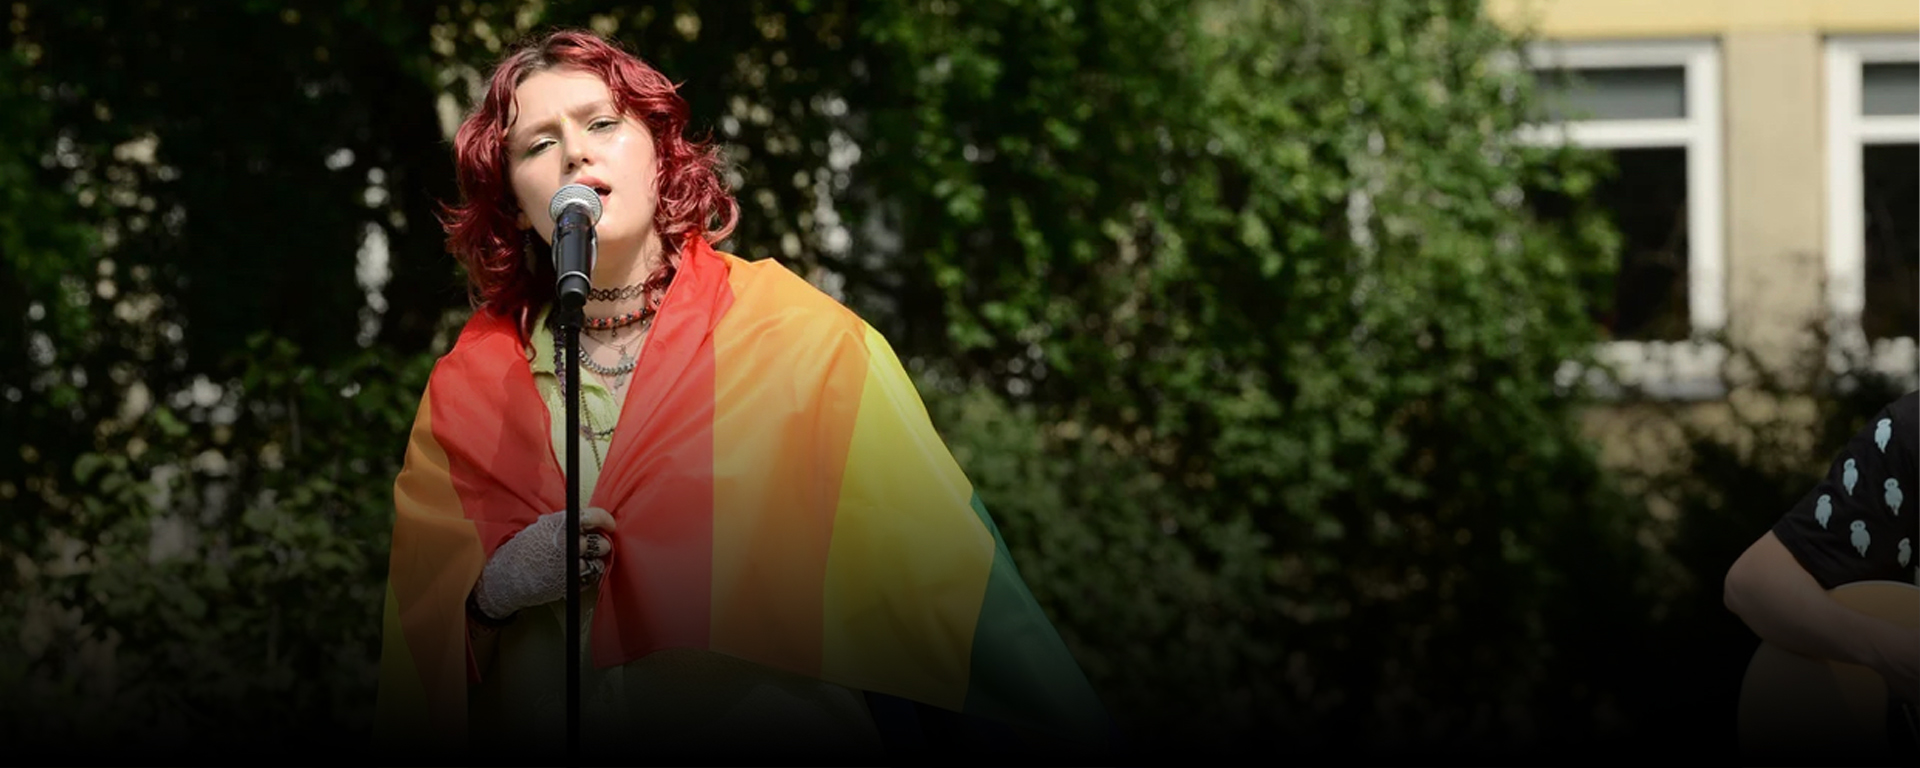 Po slovenskej speváčke Karin Ann vyjadrili podporu LGBTQ+ komunite v Poľsku aj svetové hviezdy Melanie C a Black Eyed Peas.